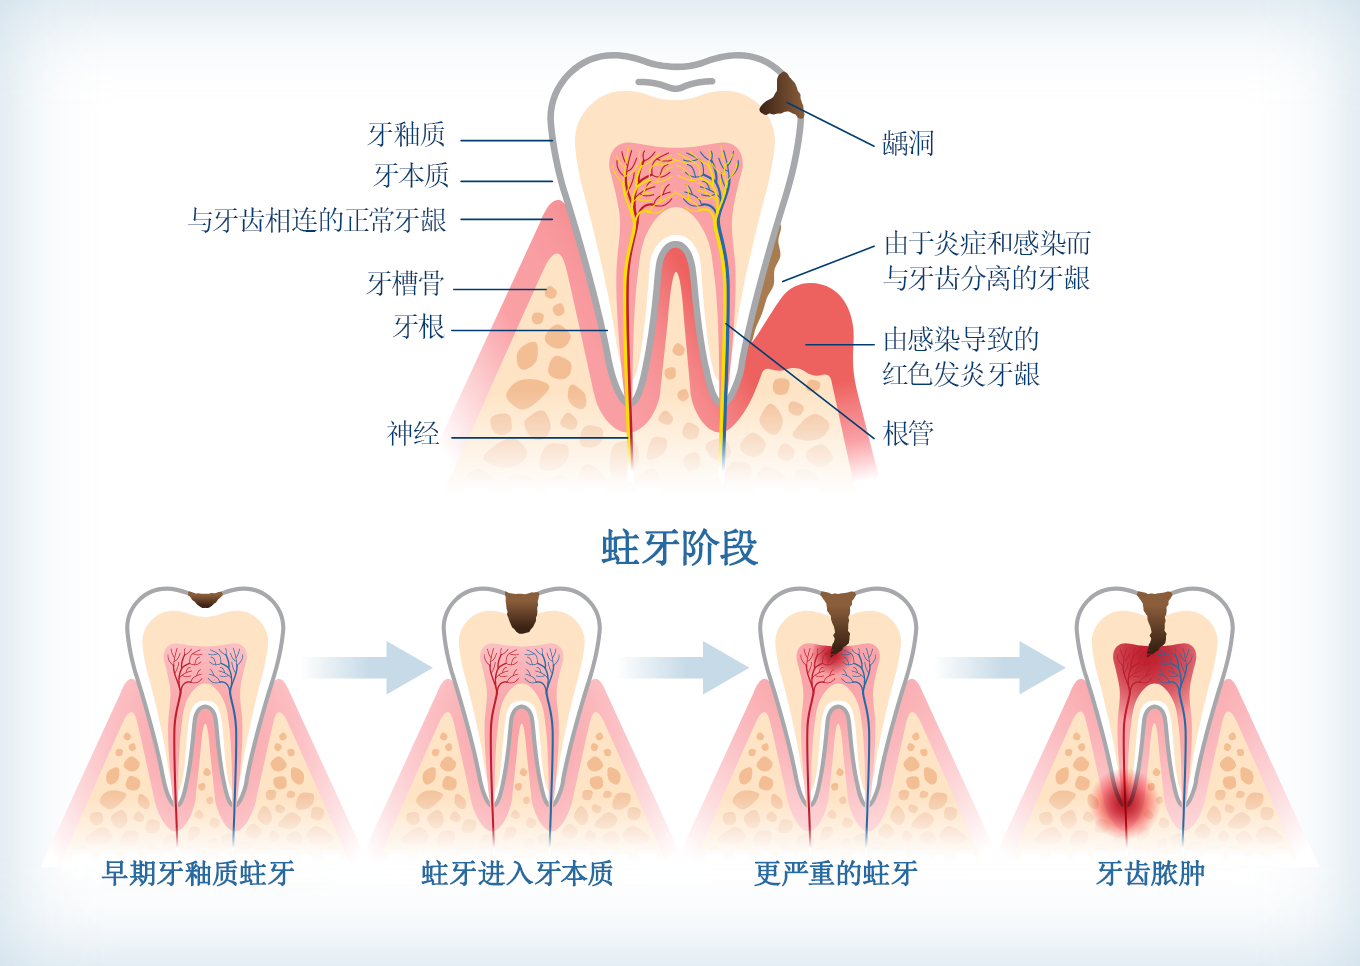 显示蛀牙从早期牙釉质蛀牙到牙齿脓肿的各阶段进展信息图。